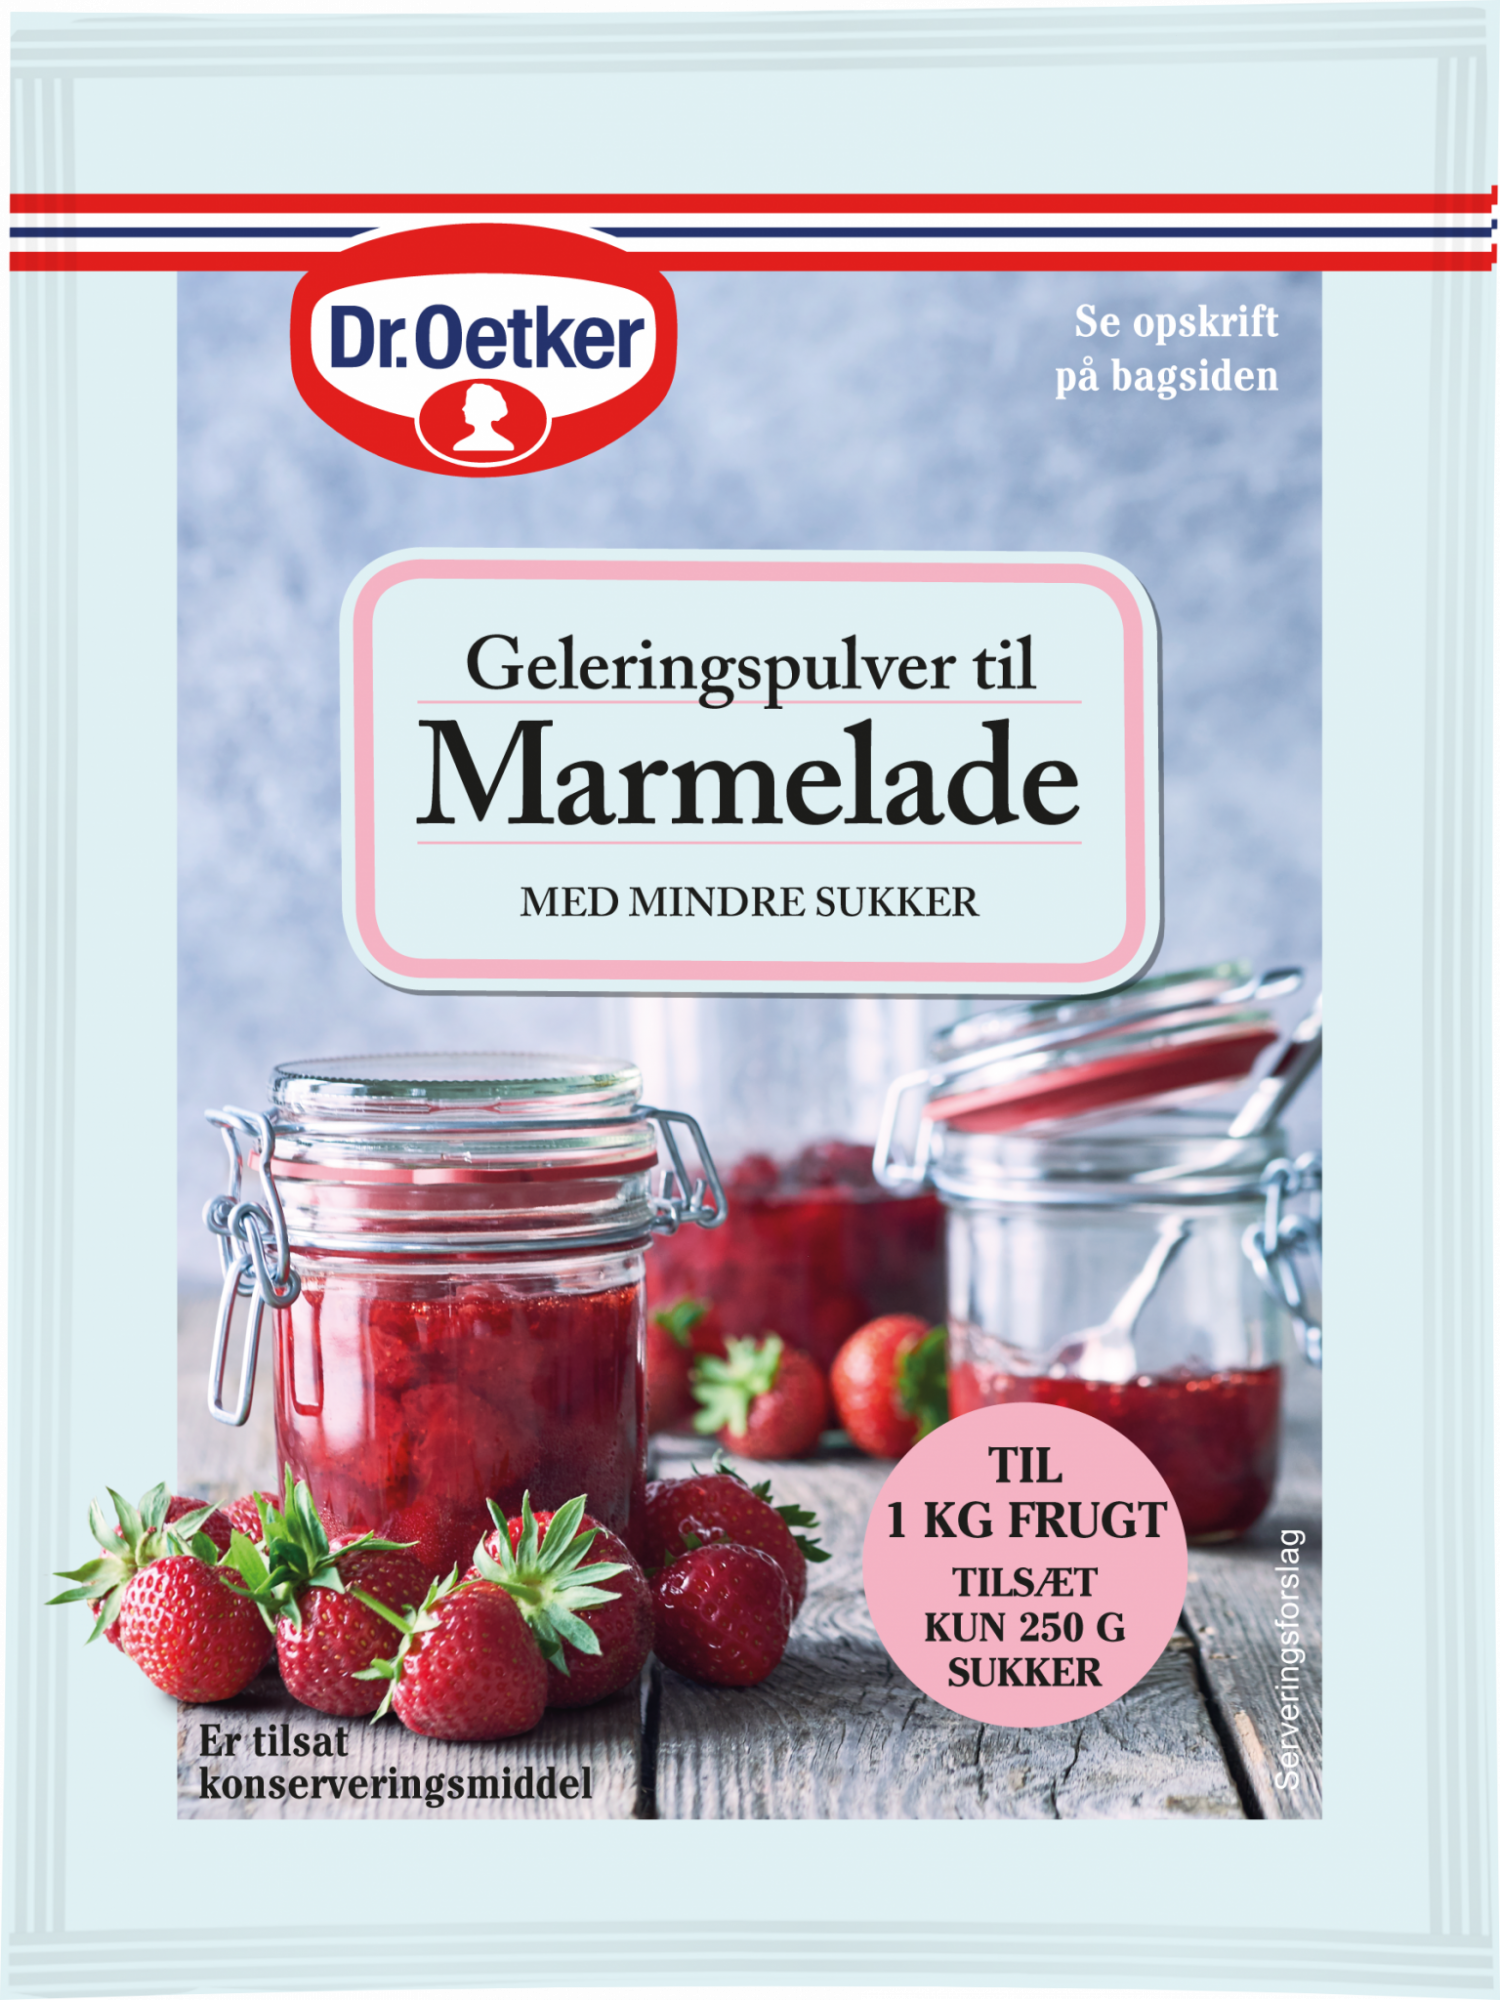 Geleringspulver til marmelade med mindre sukker - Dr. Oetker